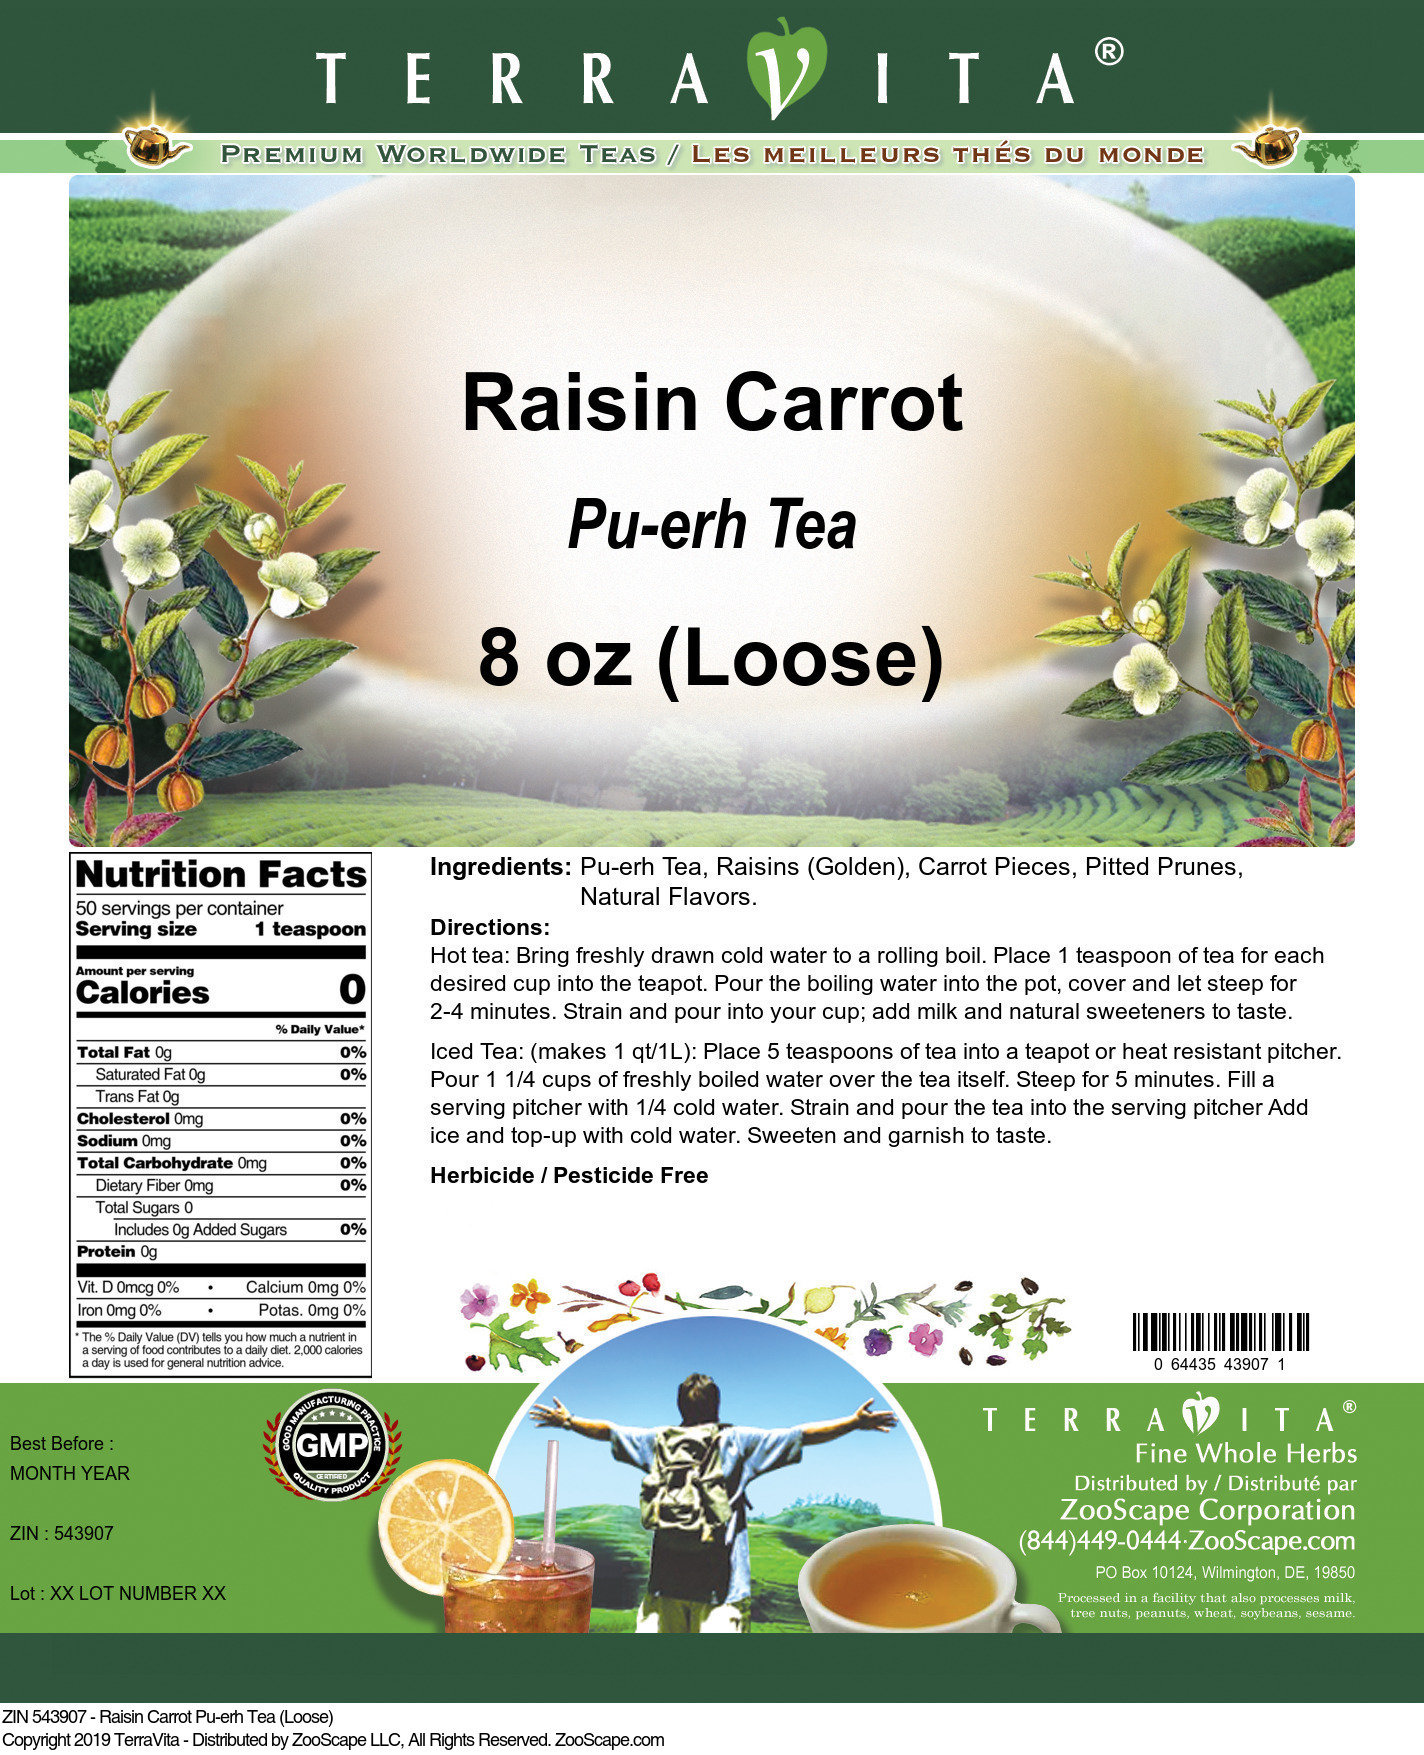 Raisin Carrot Pu-erh Tea (Loose) - Label